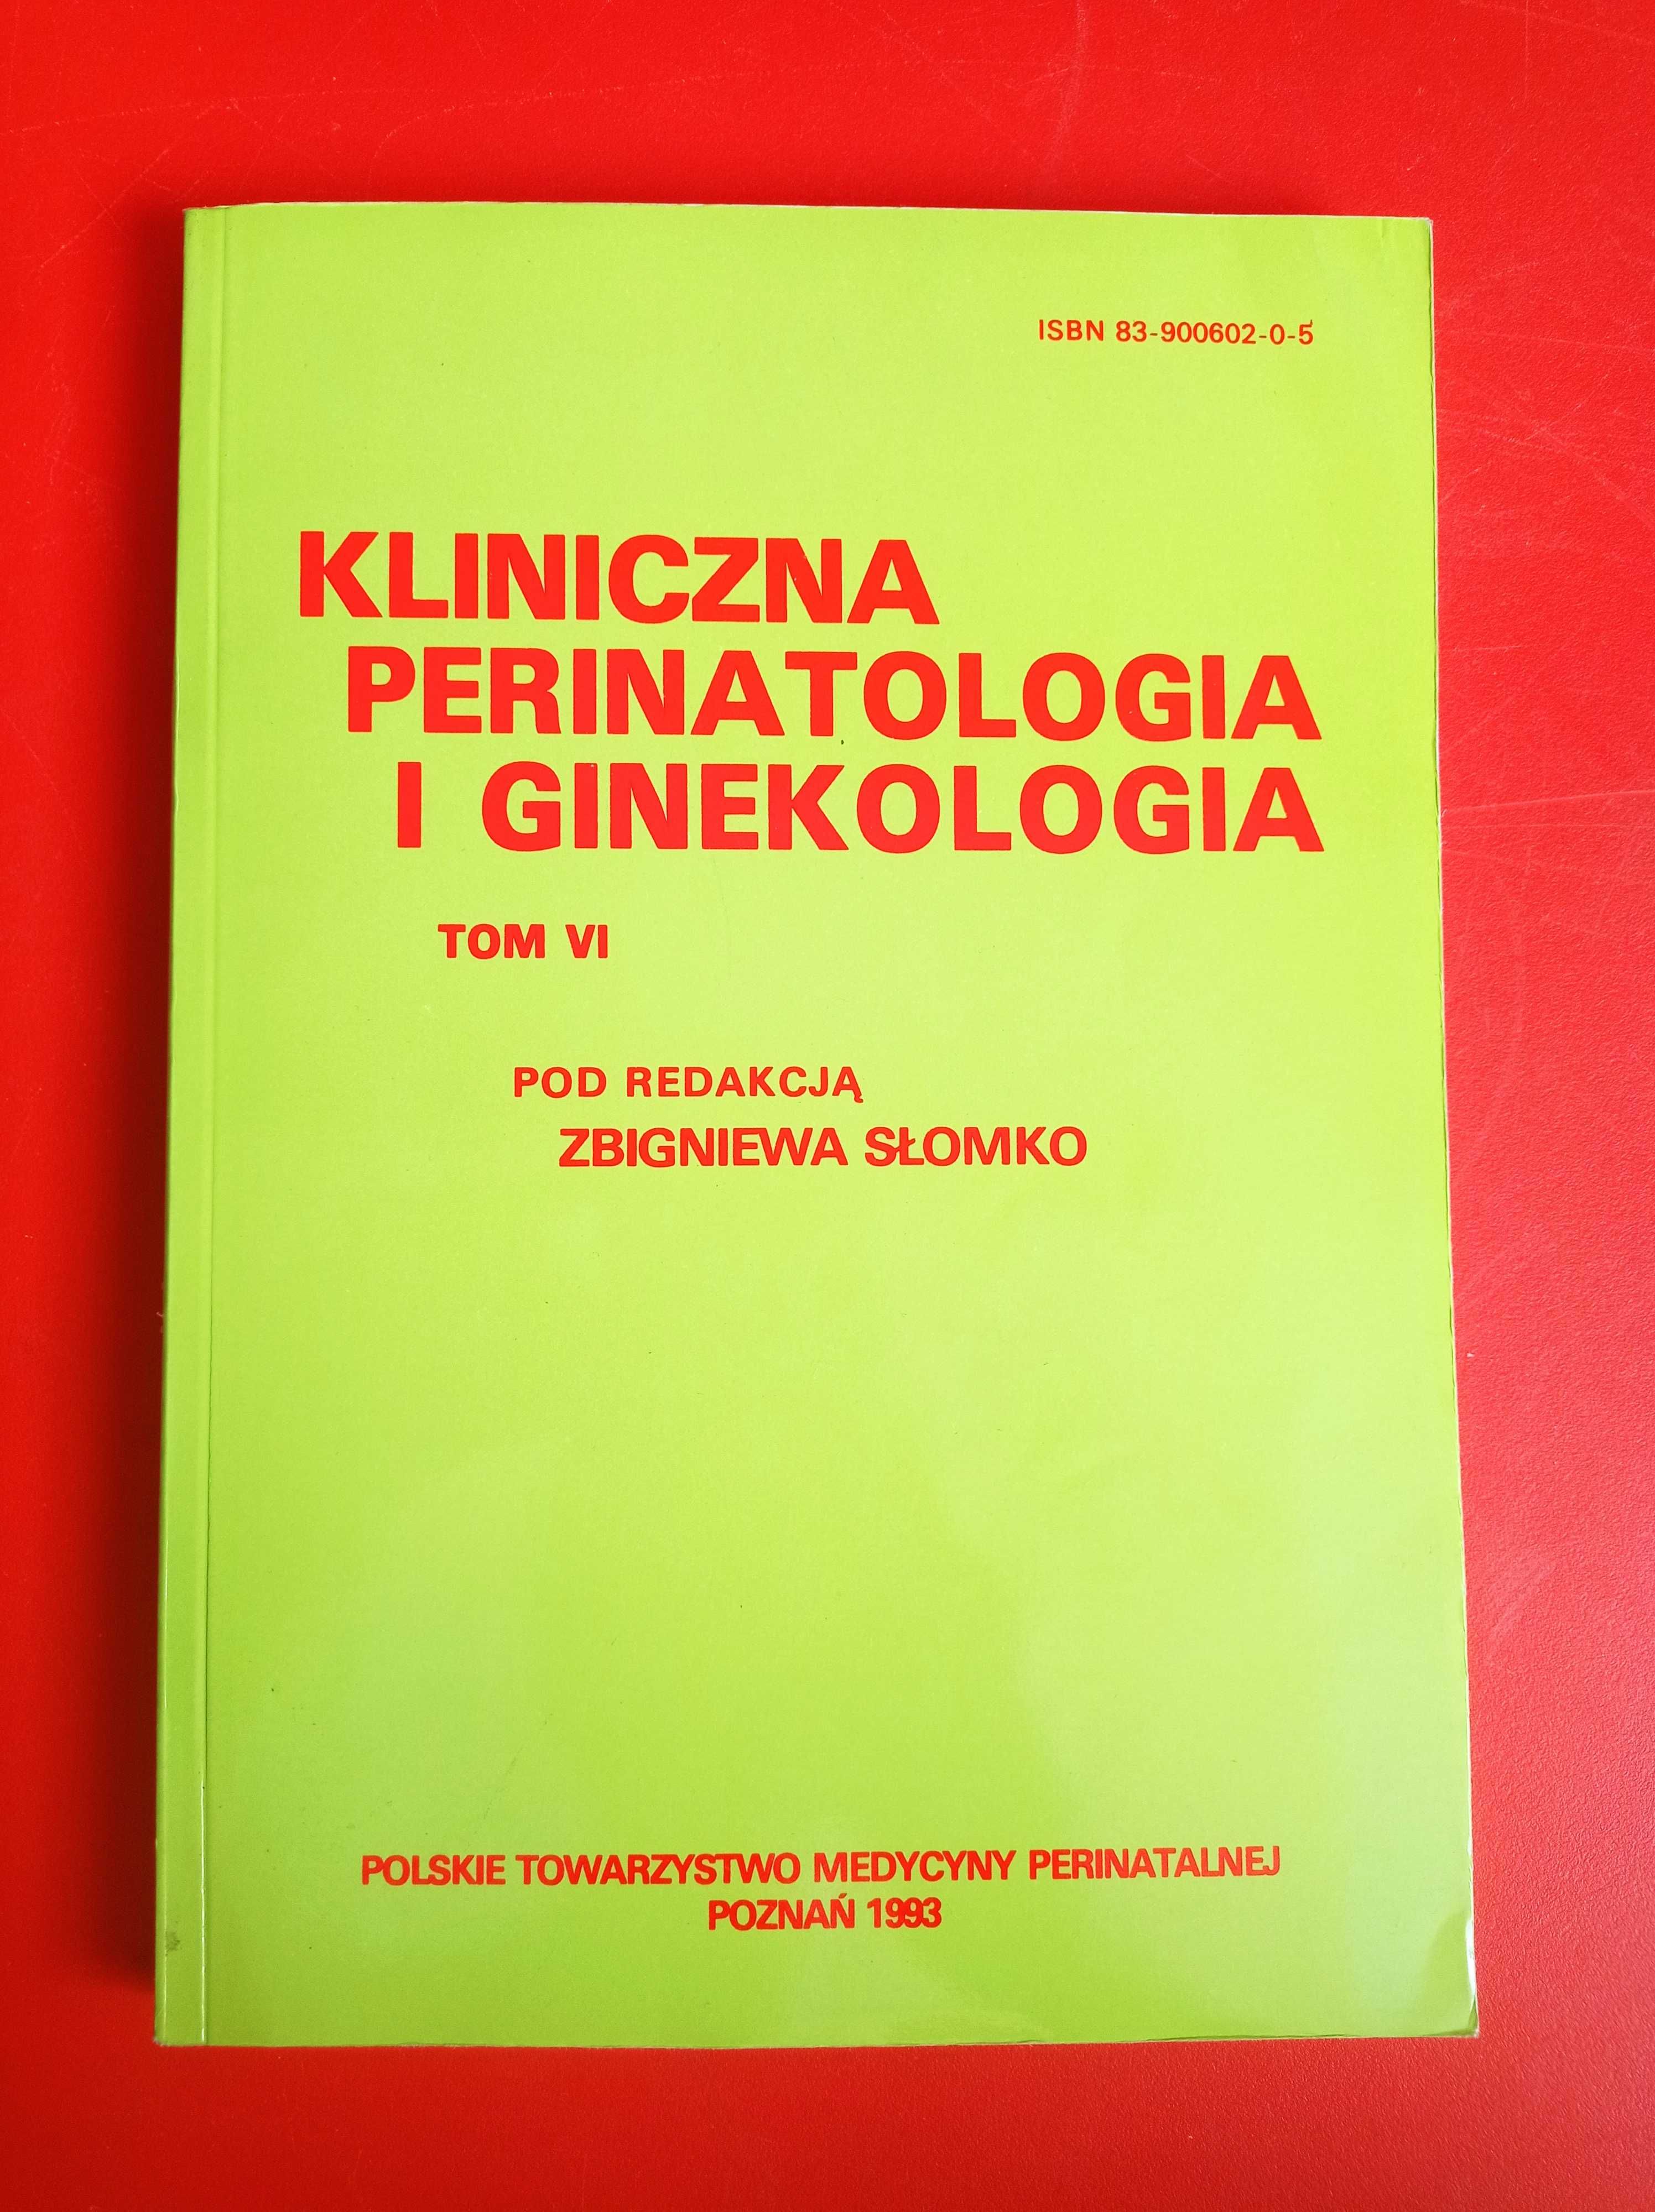 Kliniczna perinatologia i ginekologia, tom VI, Zbigniew Słomko